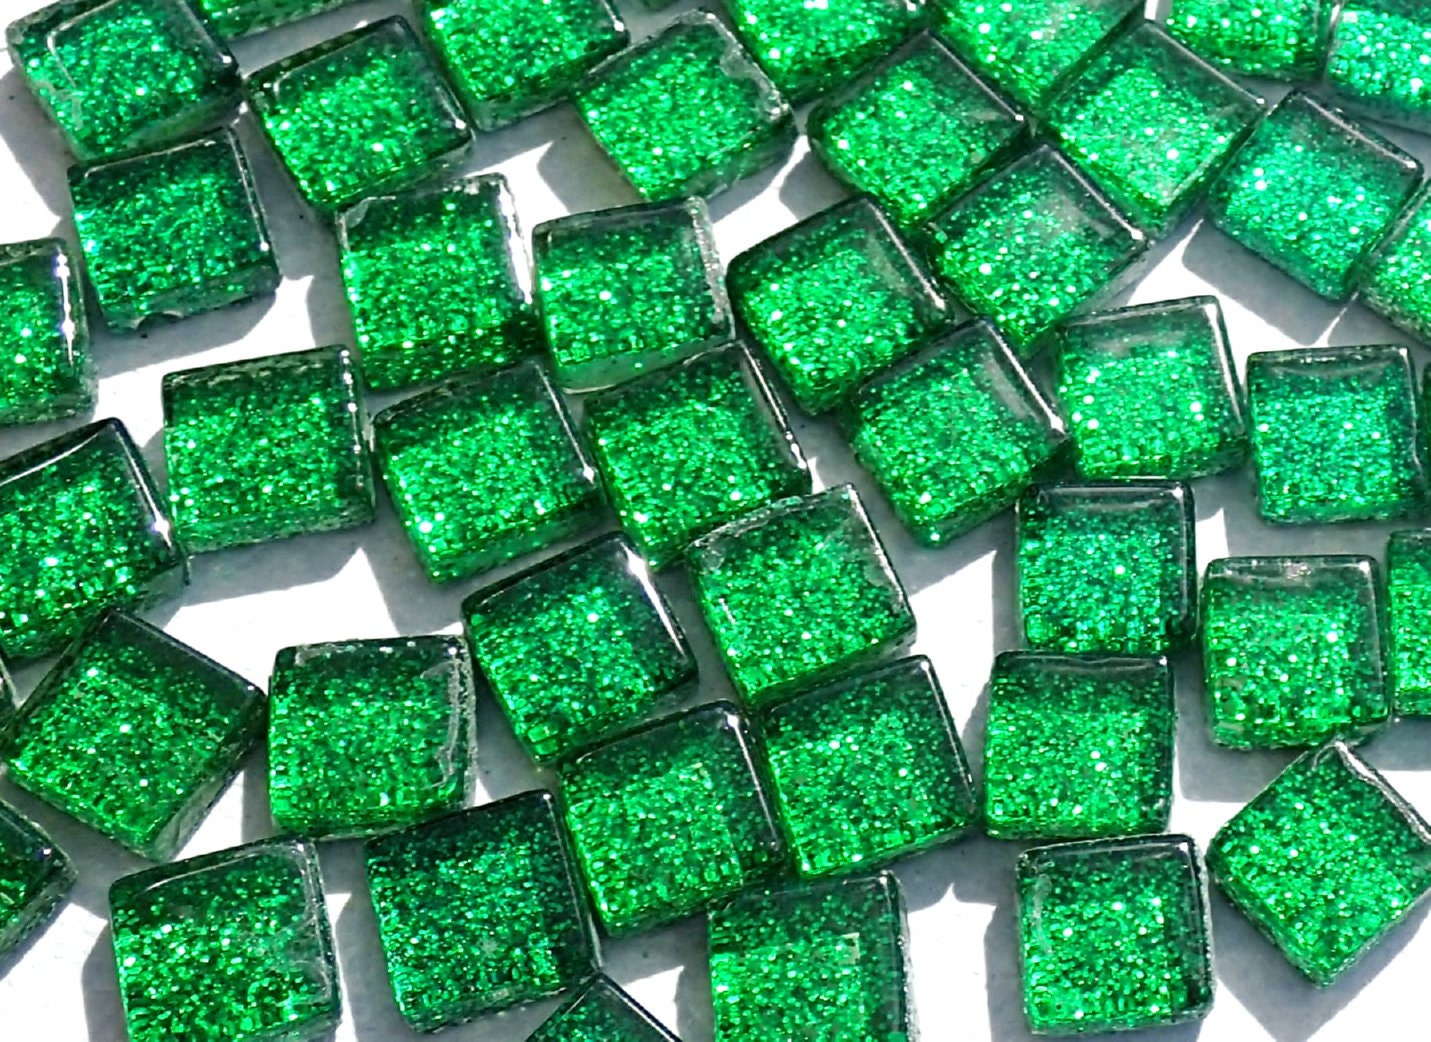 Green Tiny Glitter Tiles - 1 cm - 100g - Over 100 Glass Tiles